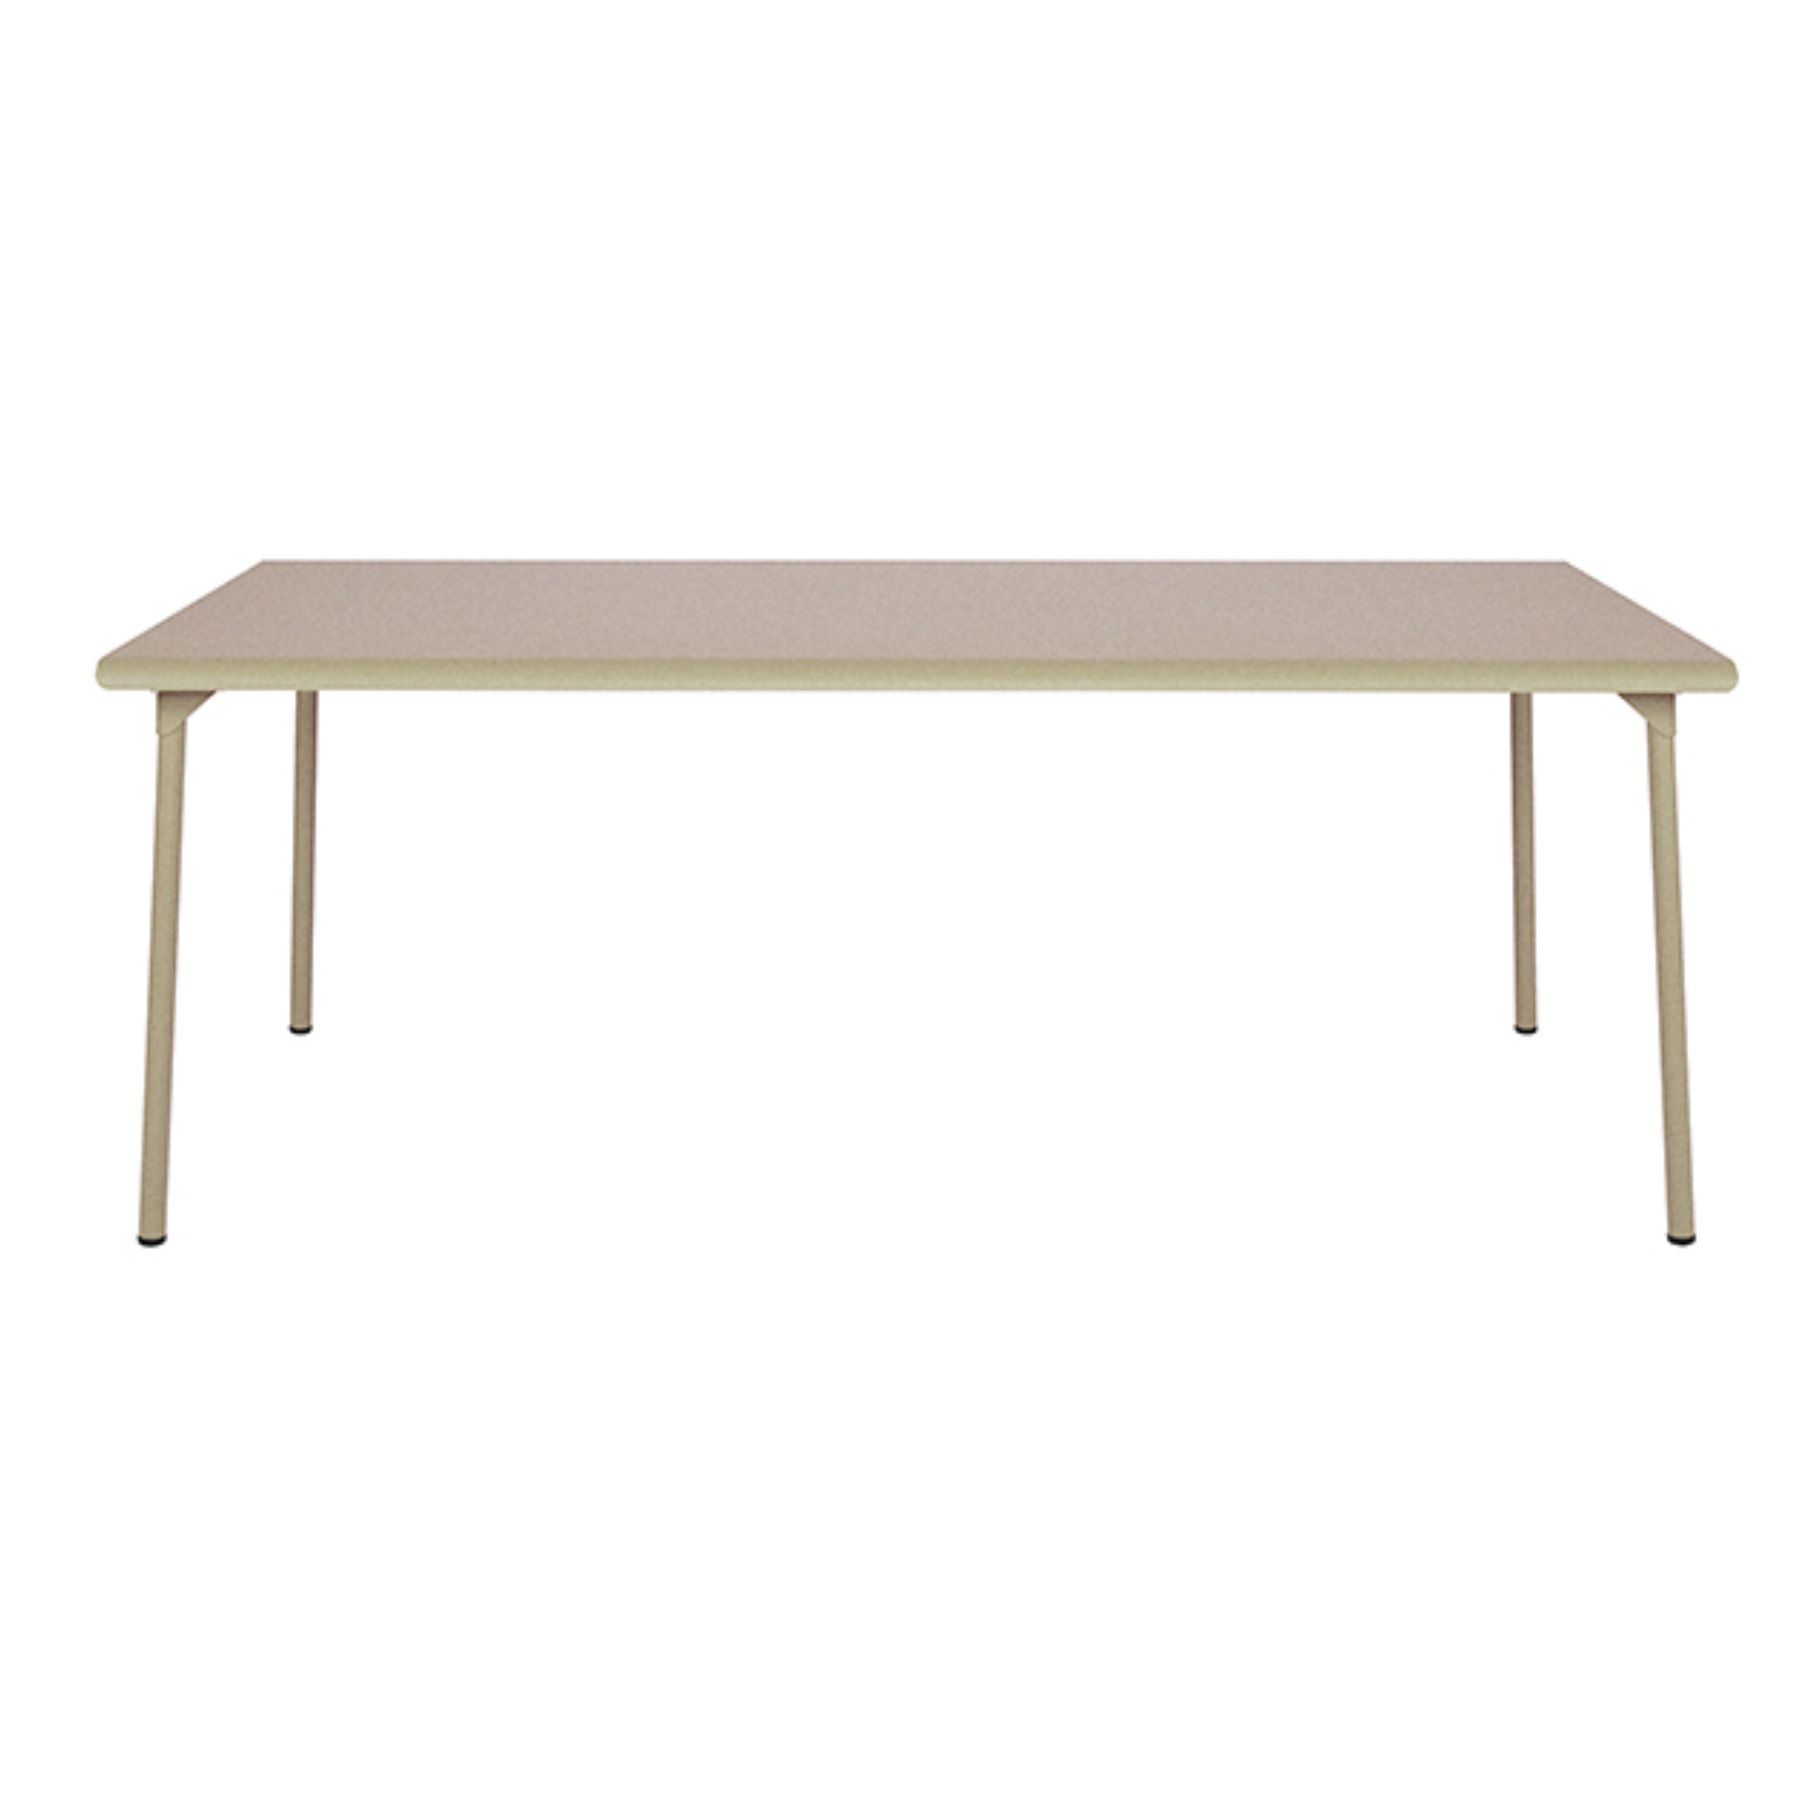 Tolix - Table outdoor Patio en inox - 200x100 cm - Sable